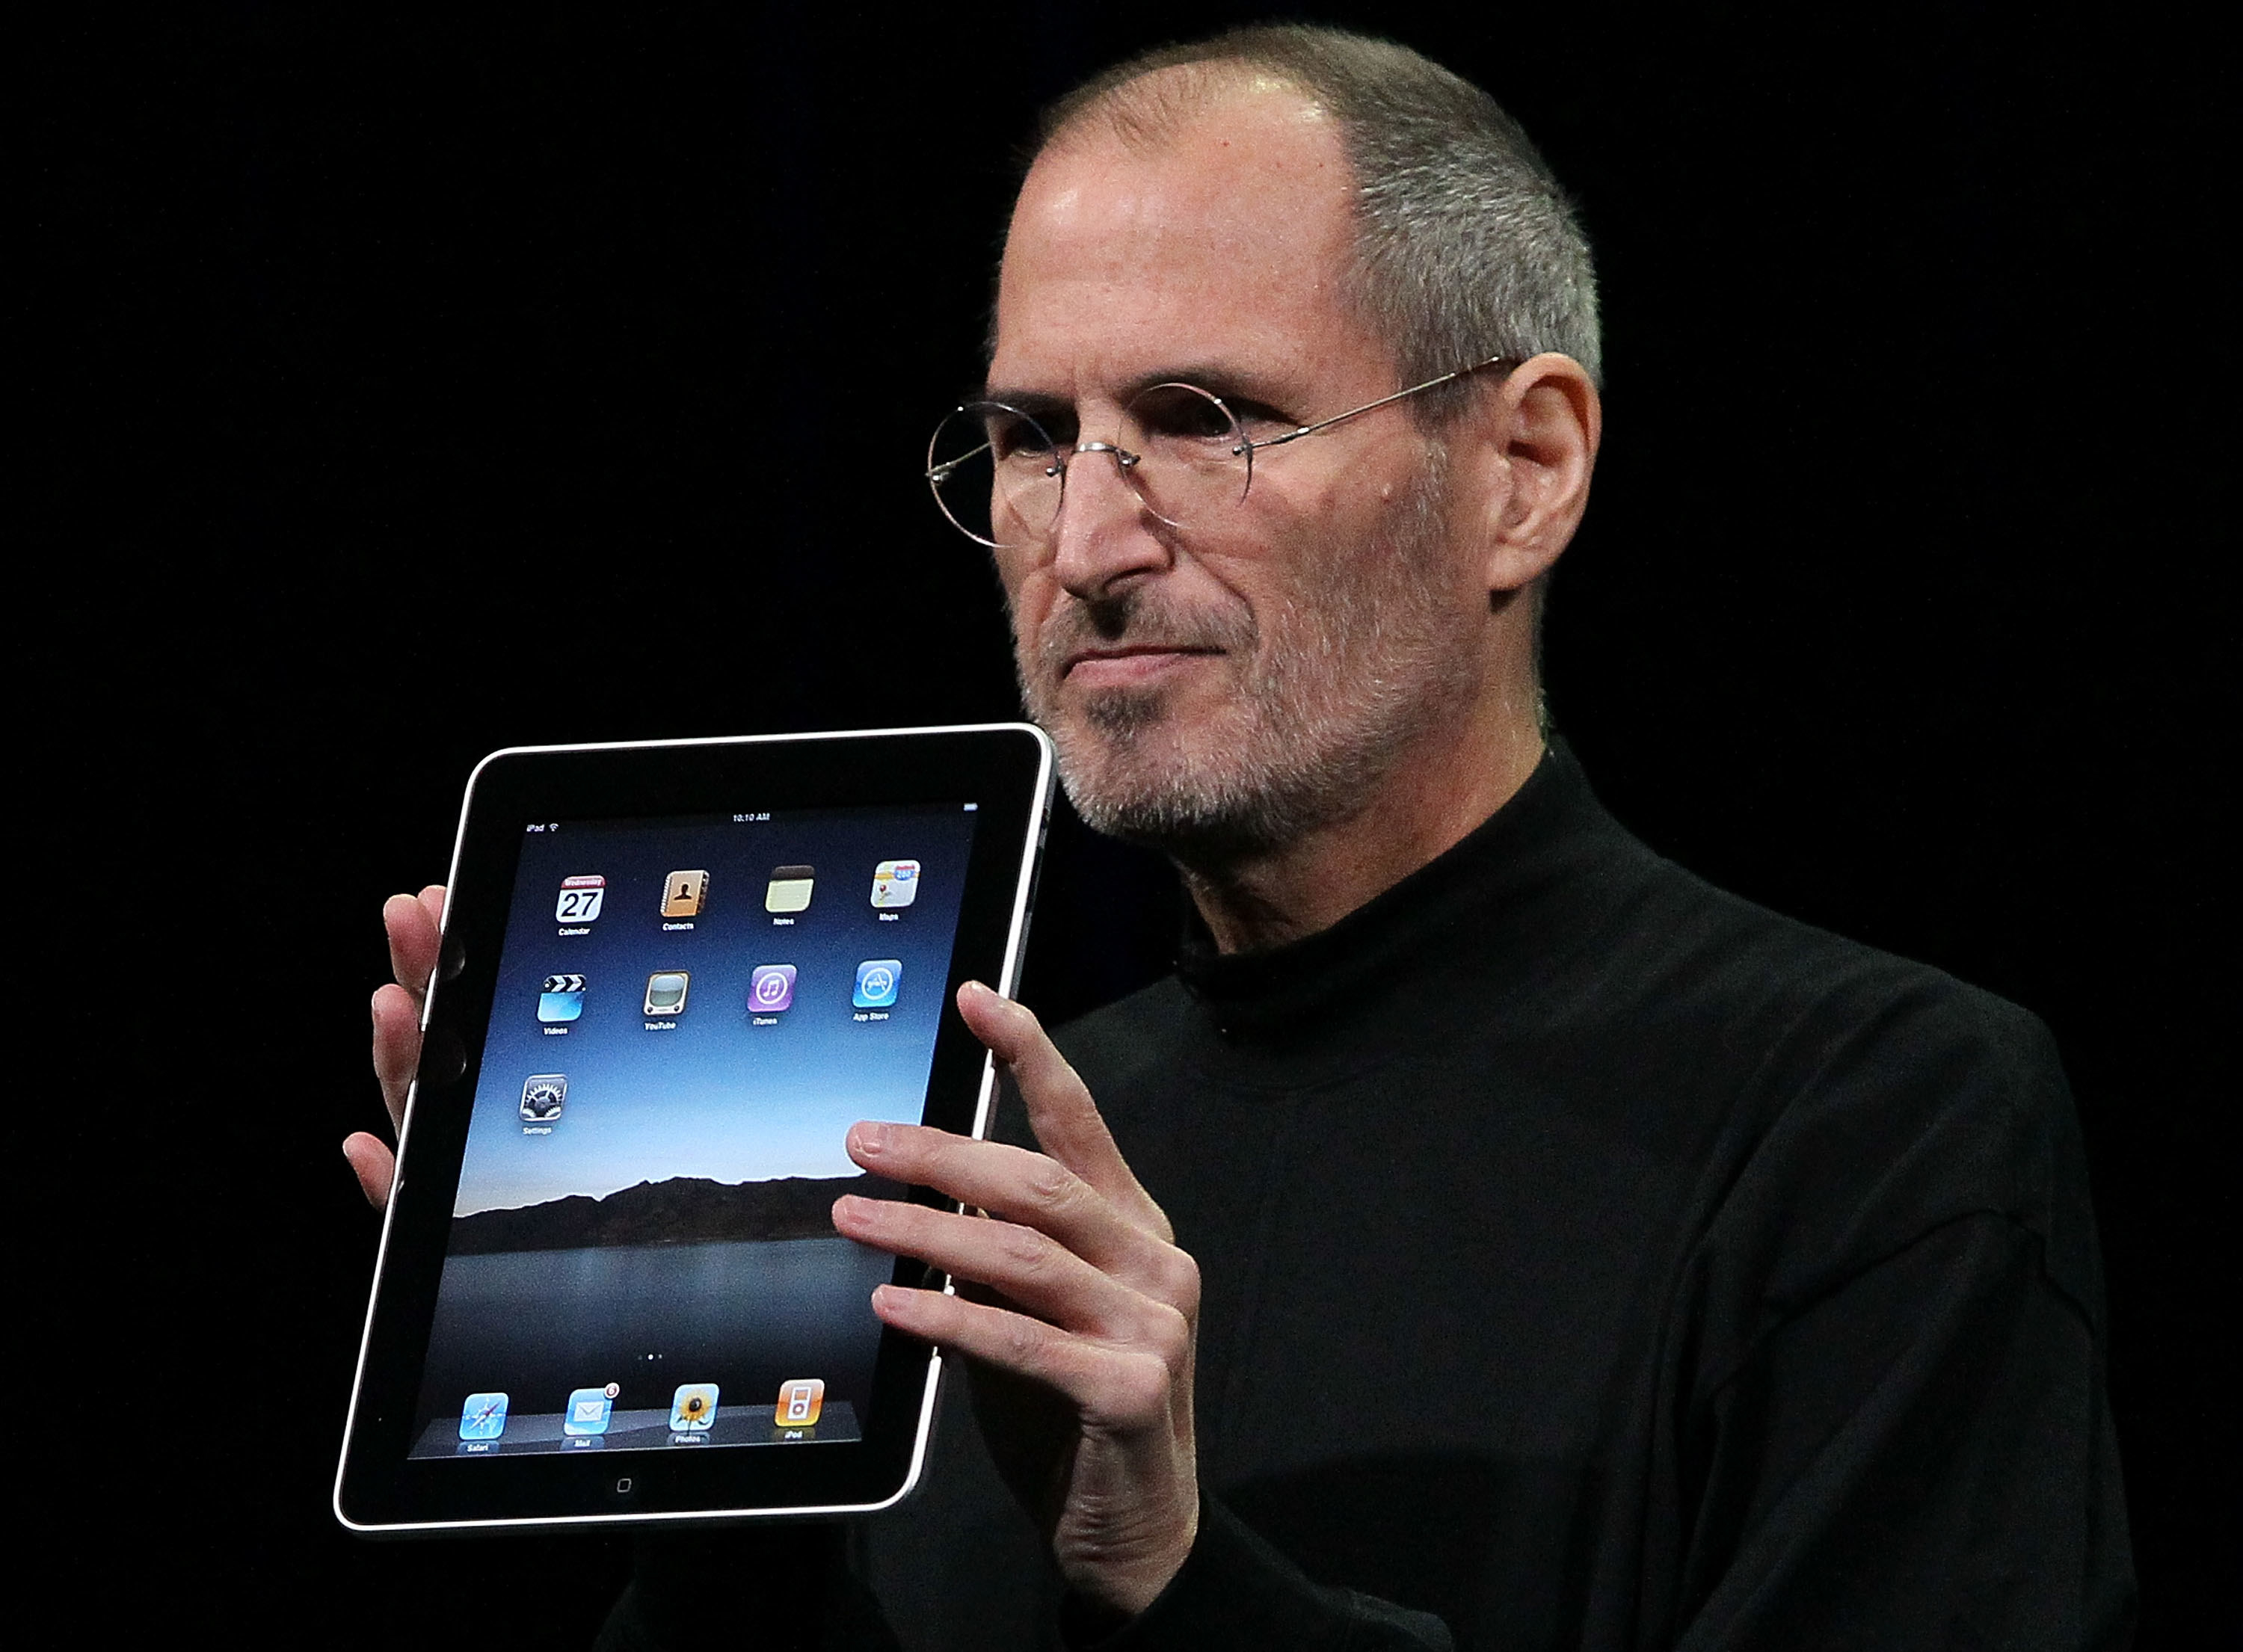 Steve Jobs announced the iPad